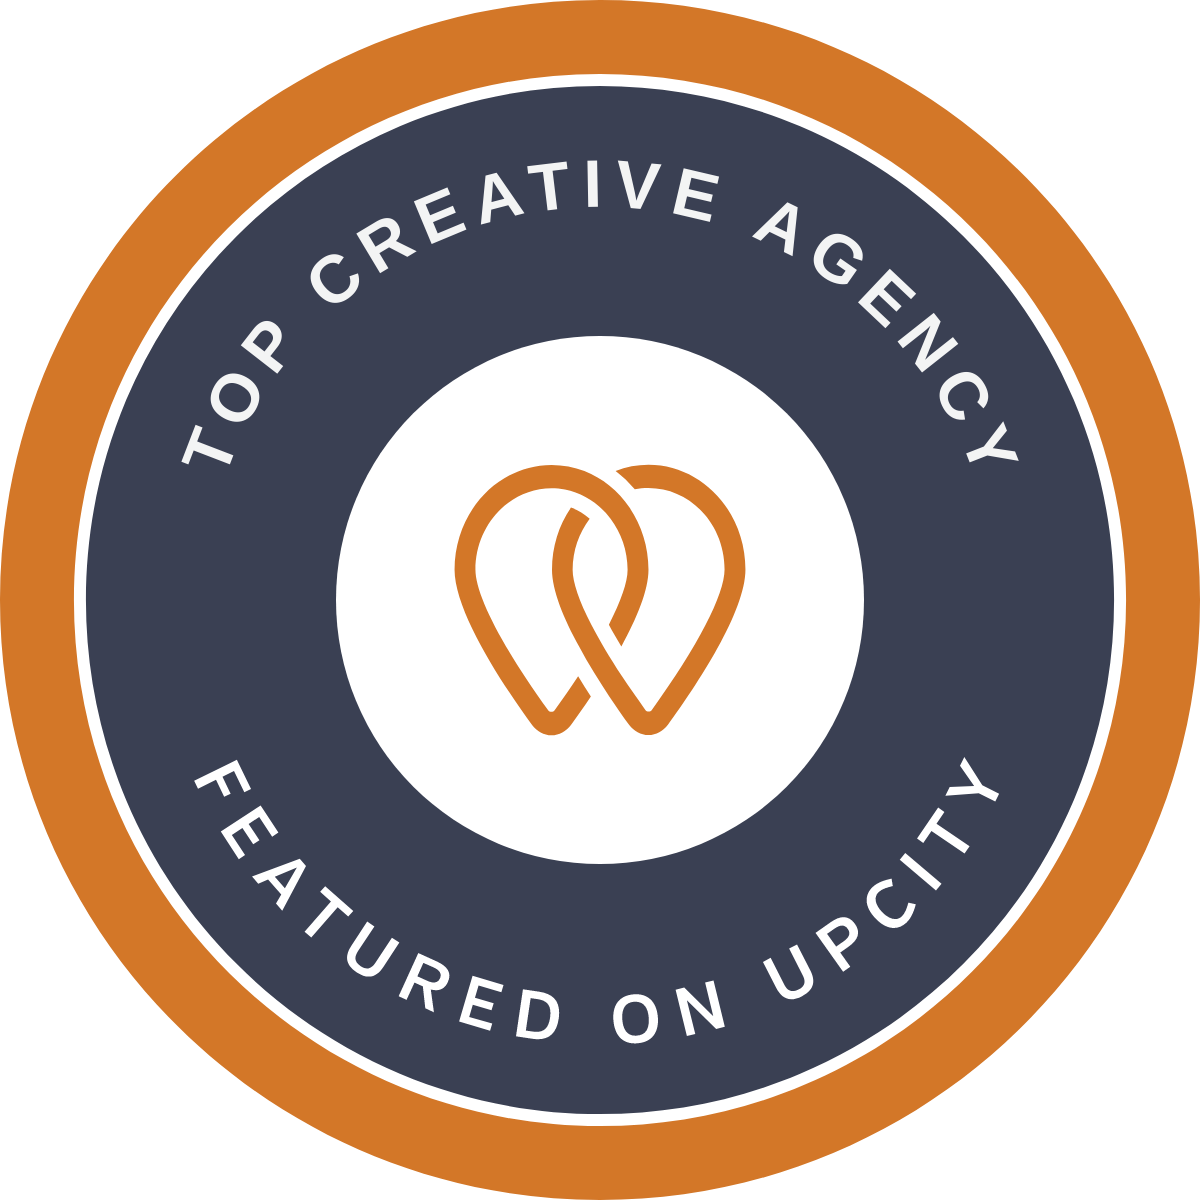 Hamilton, Ontario, Canada : L’agence CodeMasters Agency remporte le prix Top Creative Agency